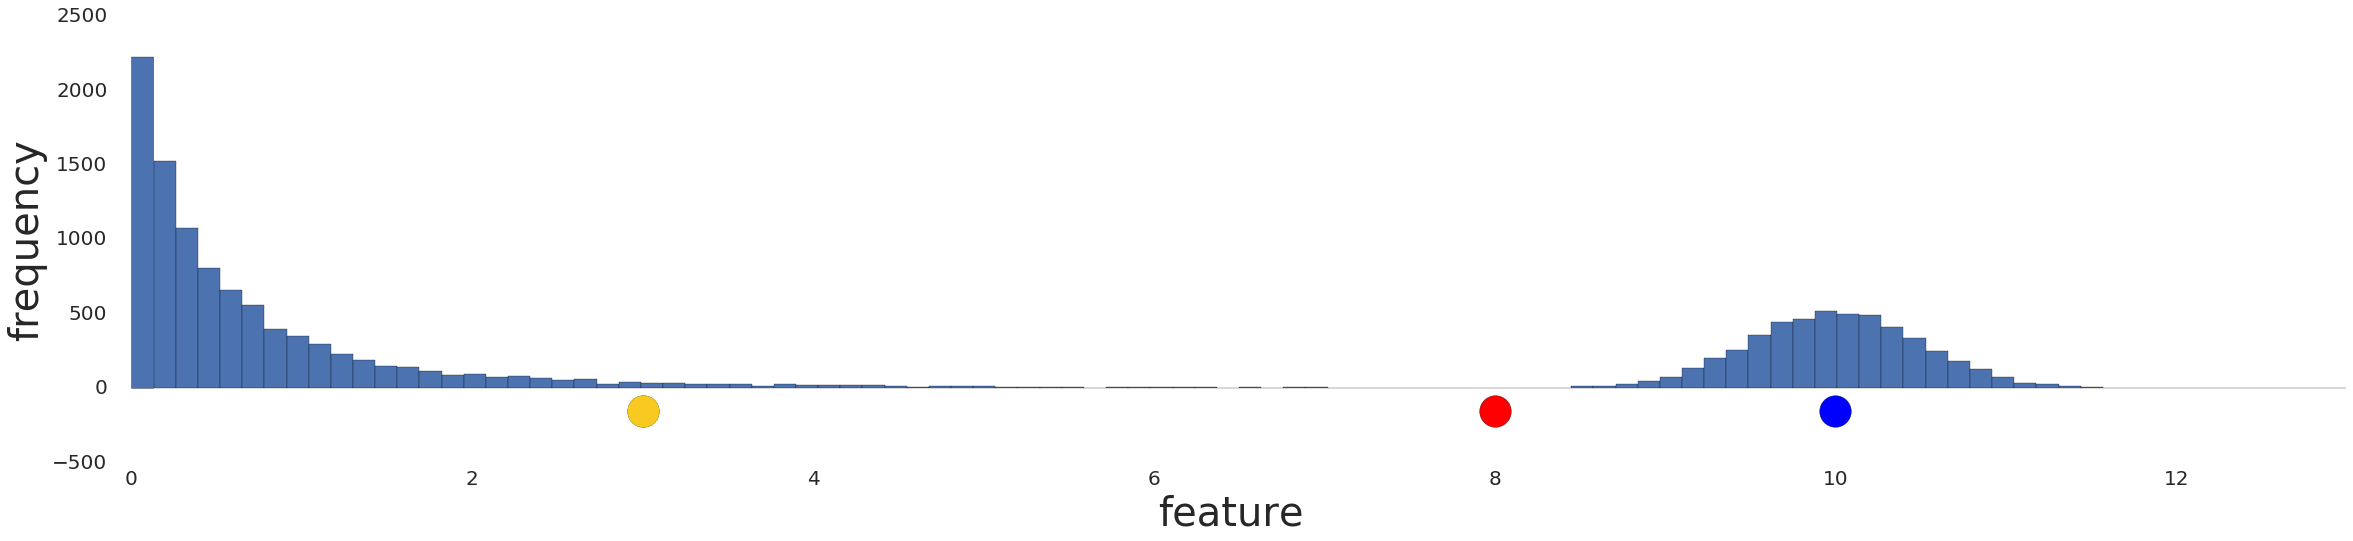 Un grafico che mostra una distribuzione dei dati prima di qualsiasi pre-elaborazione